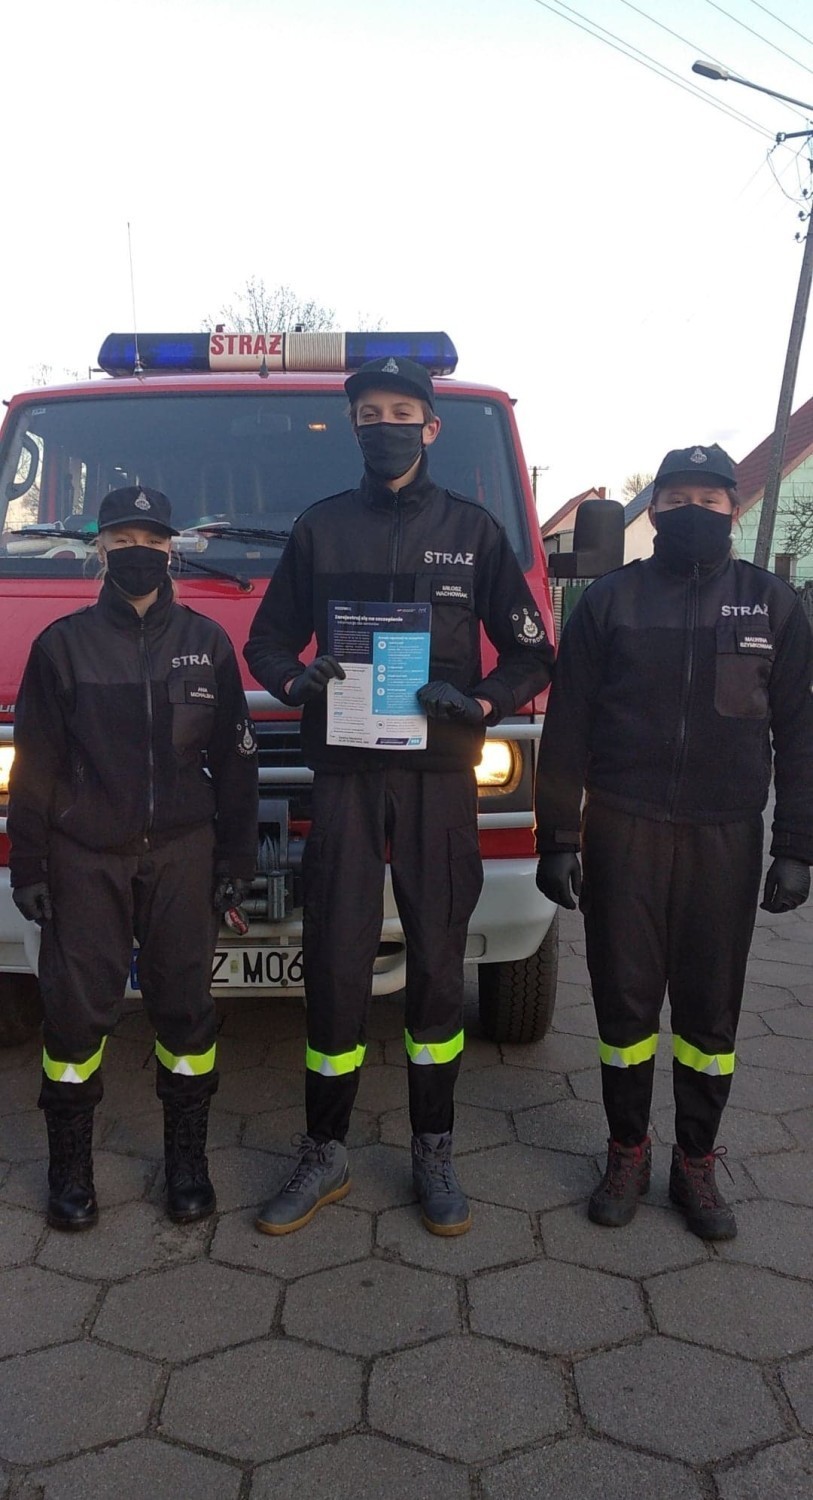 Powiat szamotulski. Koronawirus - policjanci kontrolują, strażacy roznoszą ulotki [ZDJĘCIA]